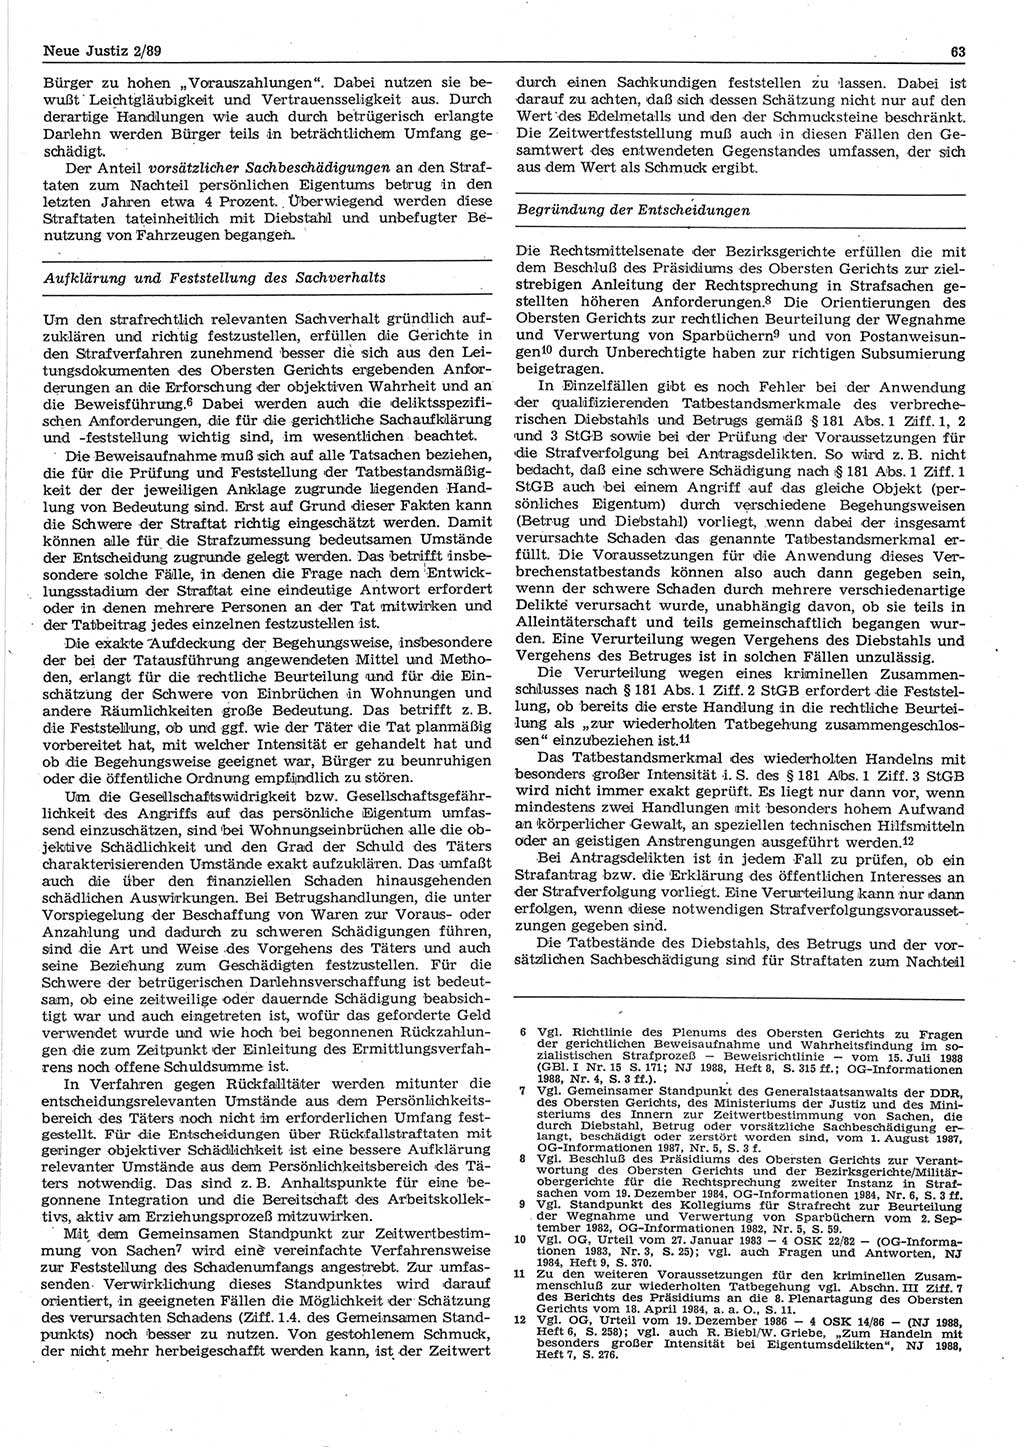 Neue Justiz (NJ), Zeitschrift für sozialistisches Recht und Gesetzlichkeit [Deutsche Demokratische Republik (DDR)], 43. Jahrgang 1989, Seite 63 (NJ DDR 1989, S. 63)